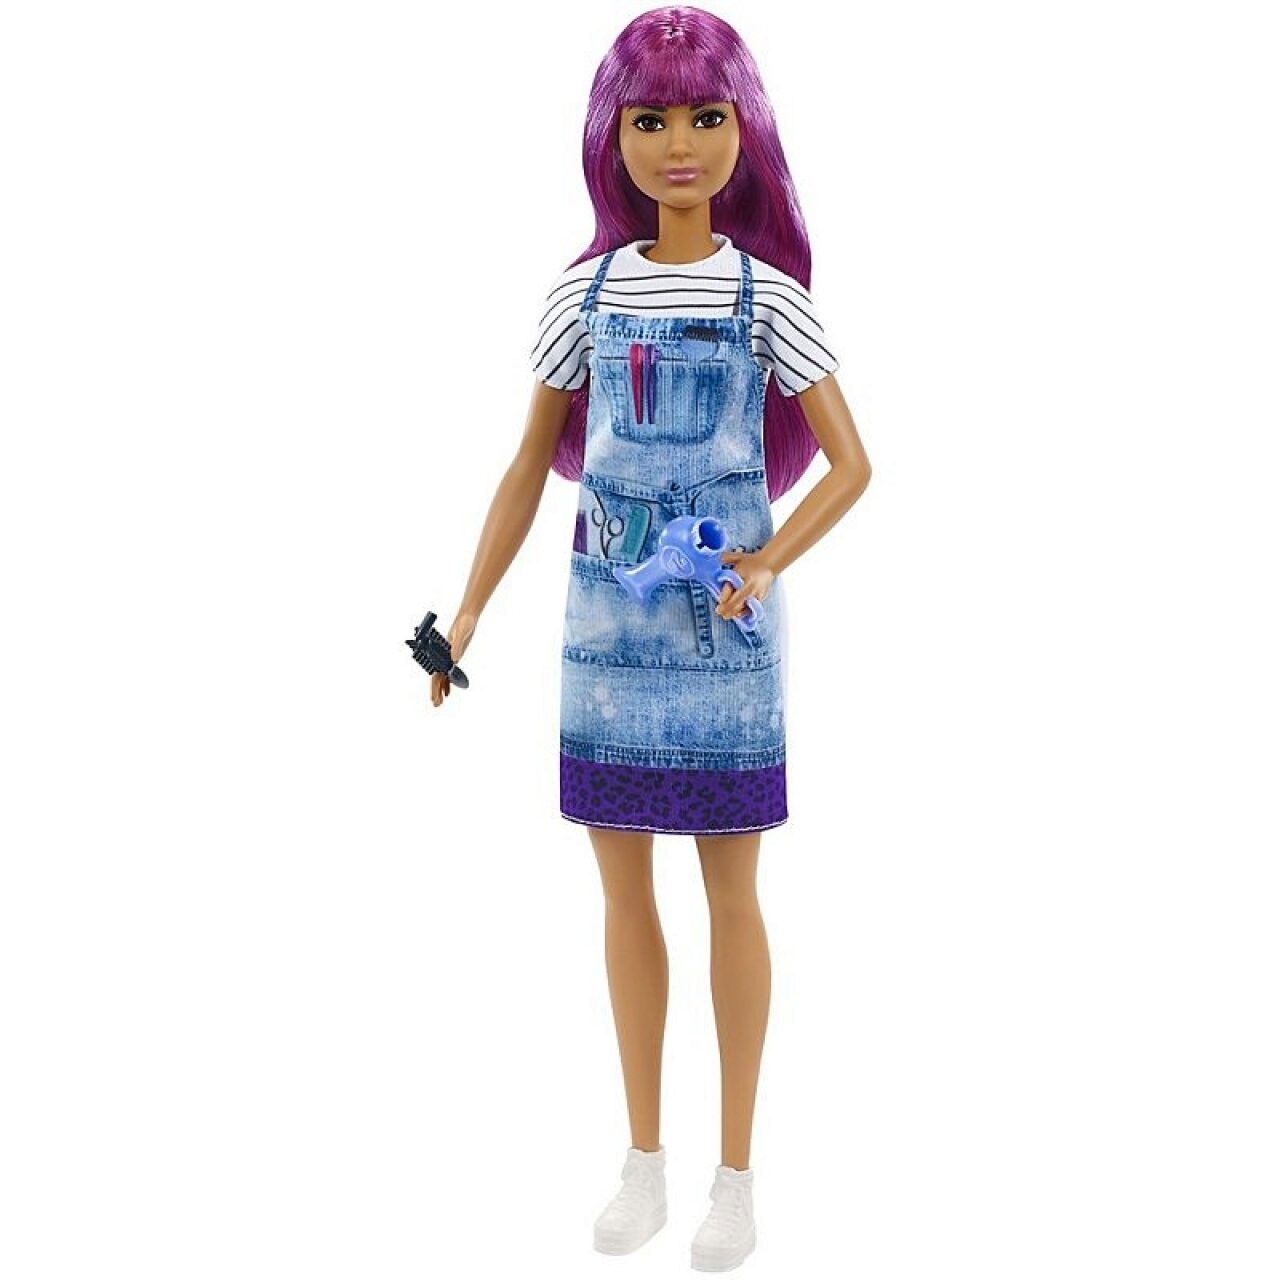 Barbie Haarsytlistin Puppe von Mattel